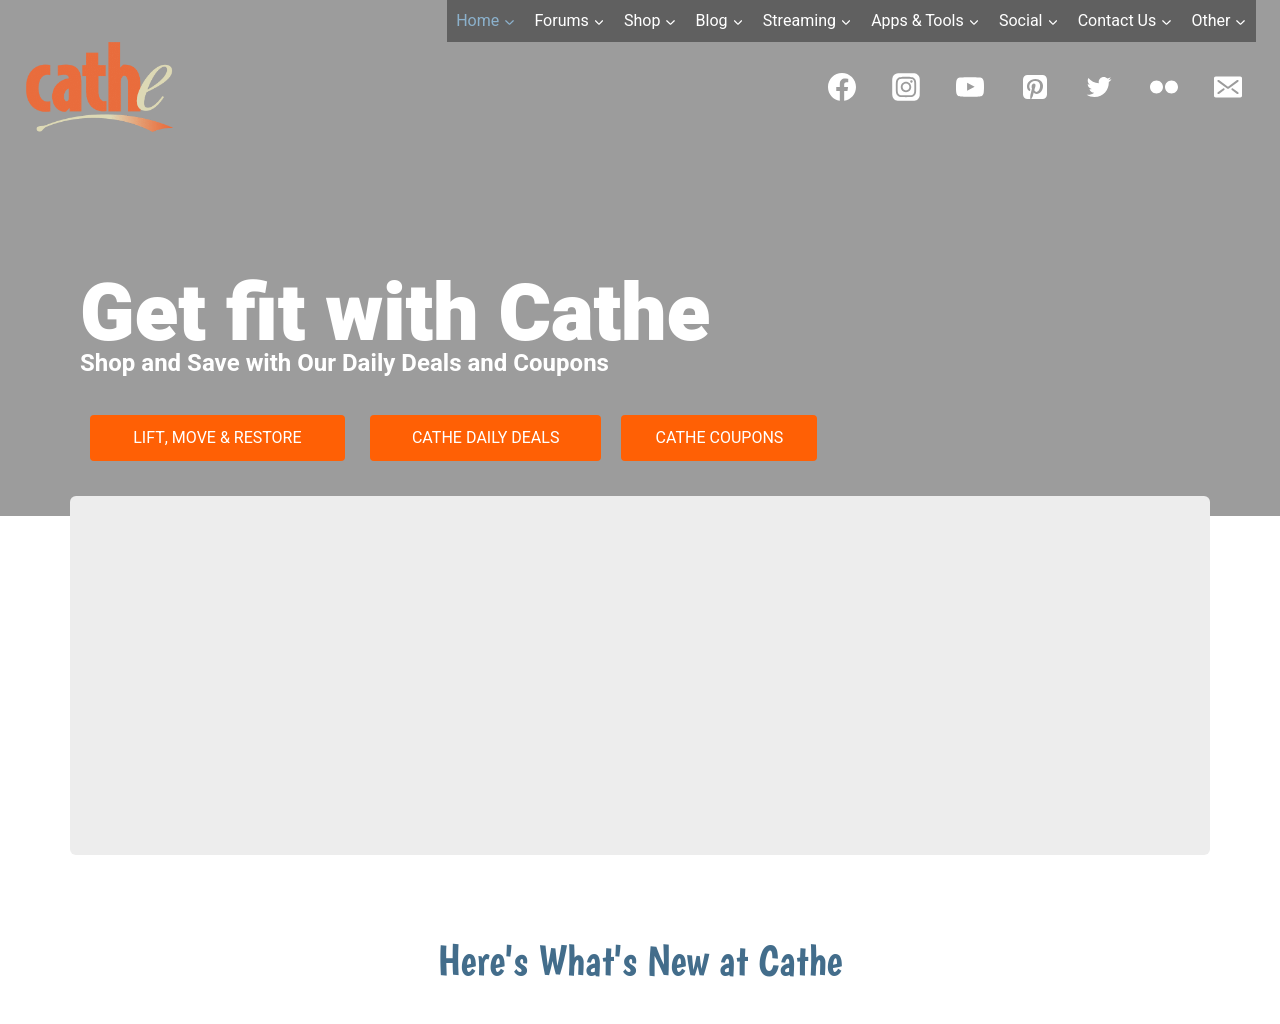 cathe.com